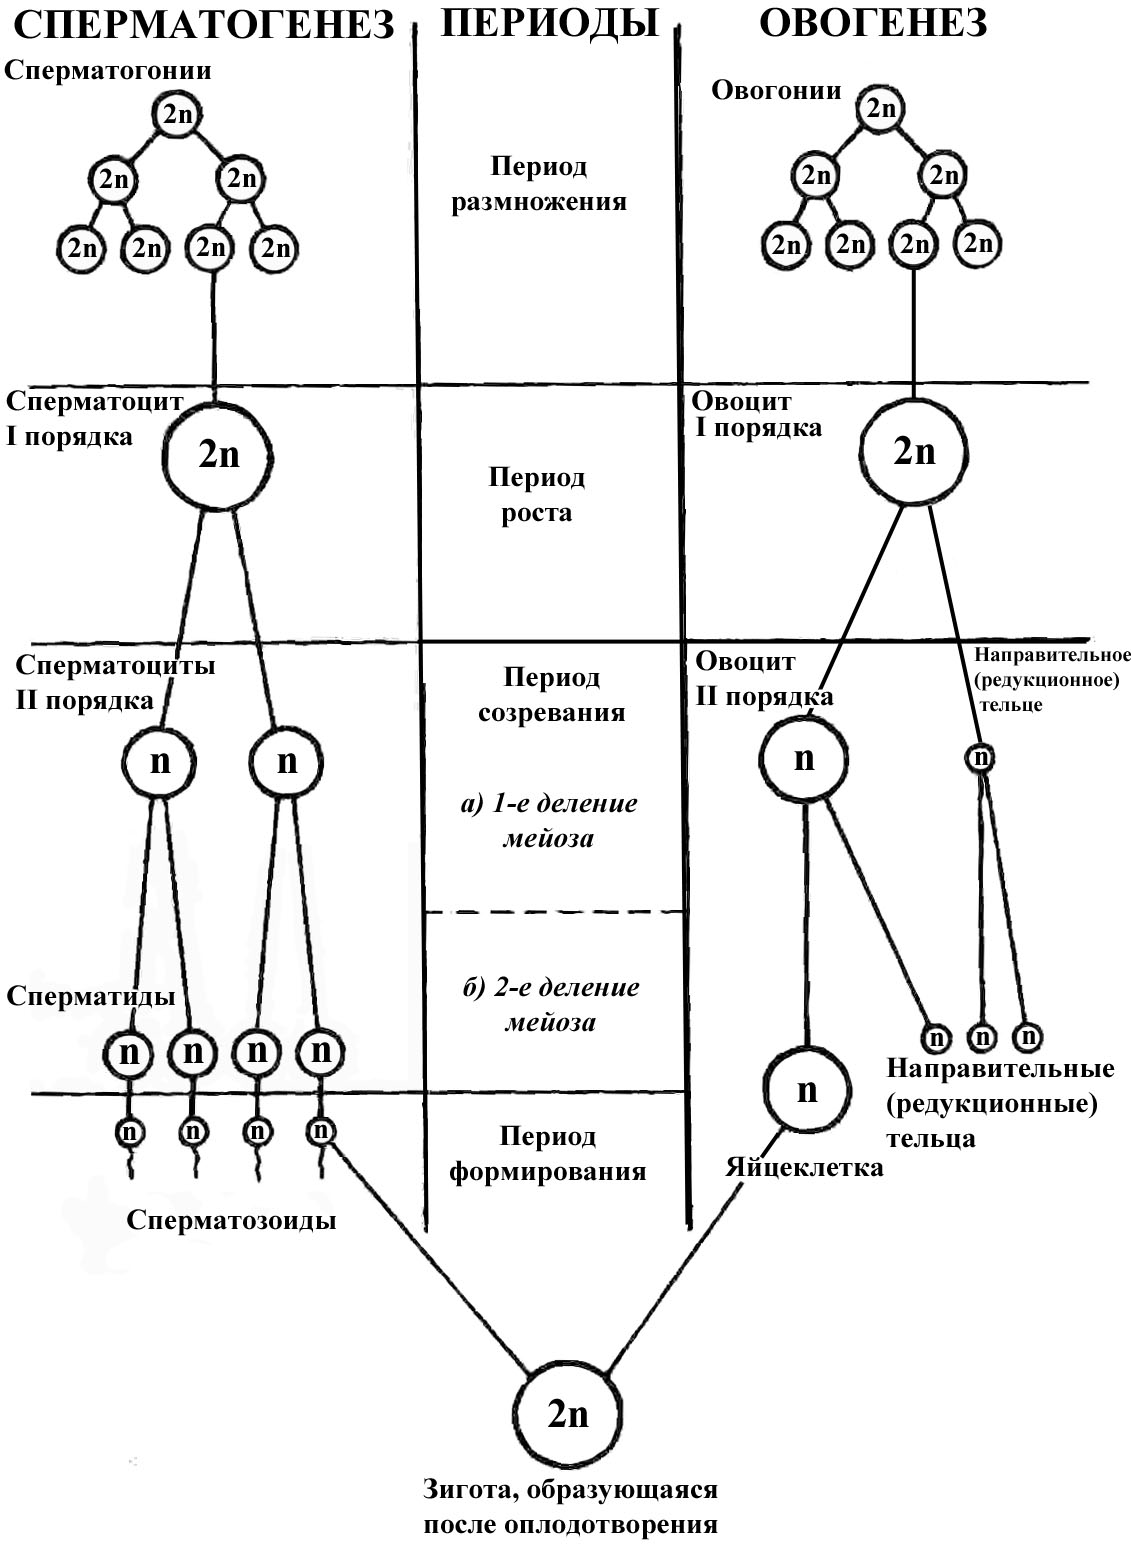 4 этапа сперматогенеза. Схема сперматогенеза и овогенеза. Схема процесса сперматогенеза. Спермато и овогенез схема. Сперматогенез оогинез схемы.